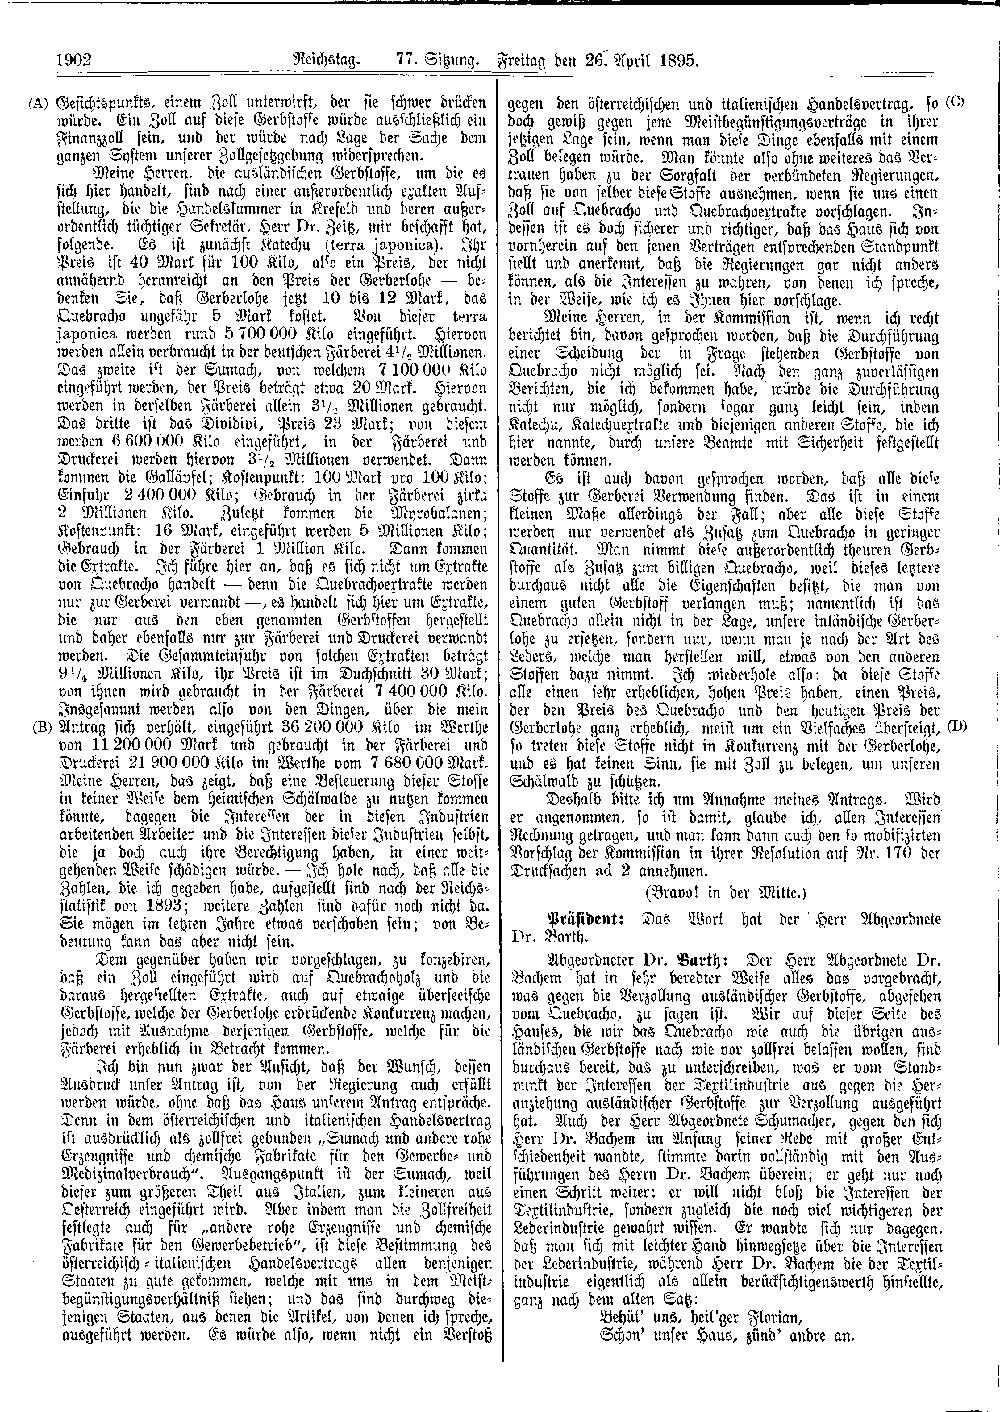 Scan der Seite 1902